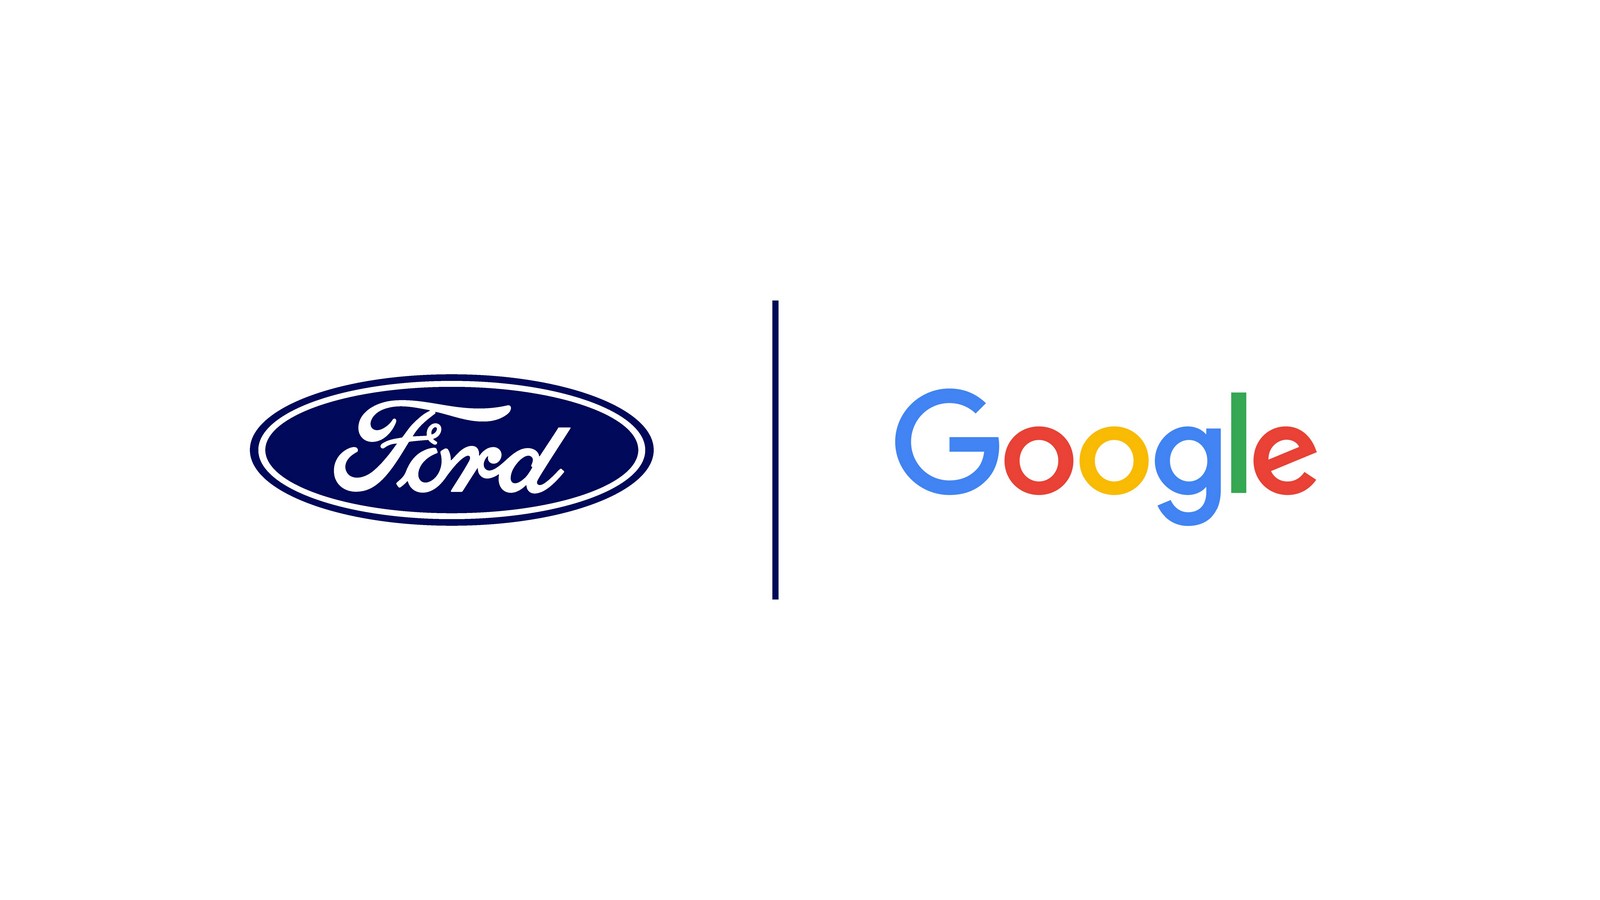 Ford và Google "bắt tay", tạo nên mối quan hệ hợp tác chưa từng có tiền lệ